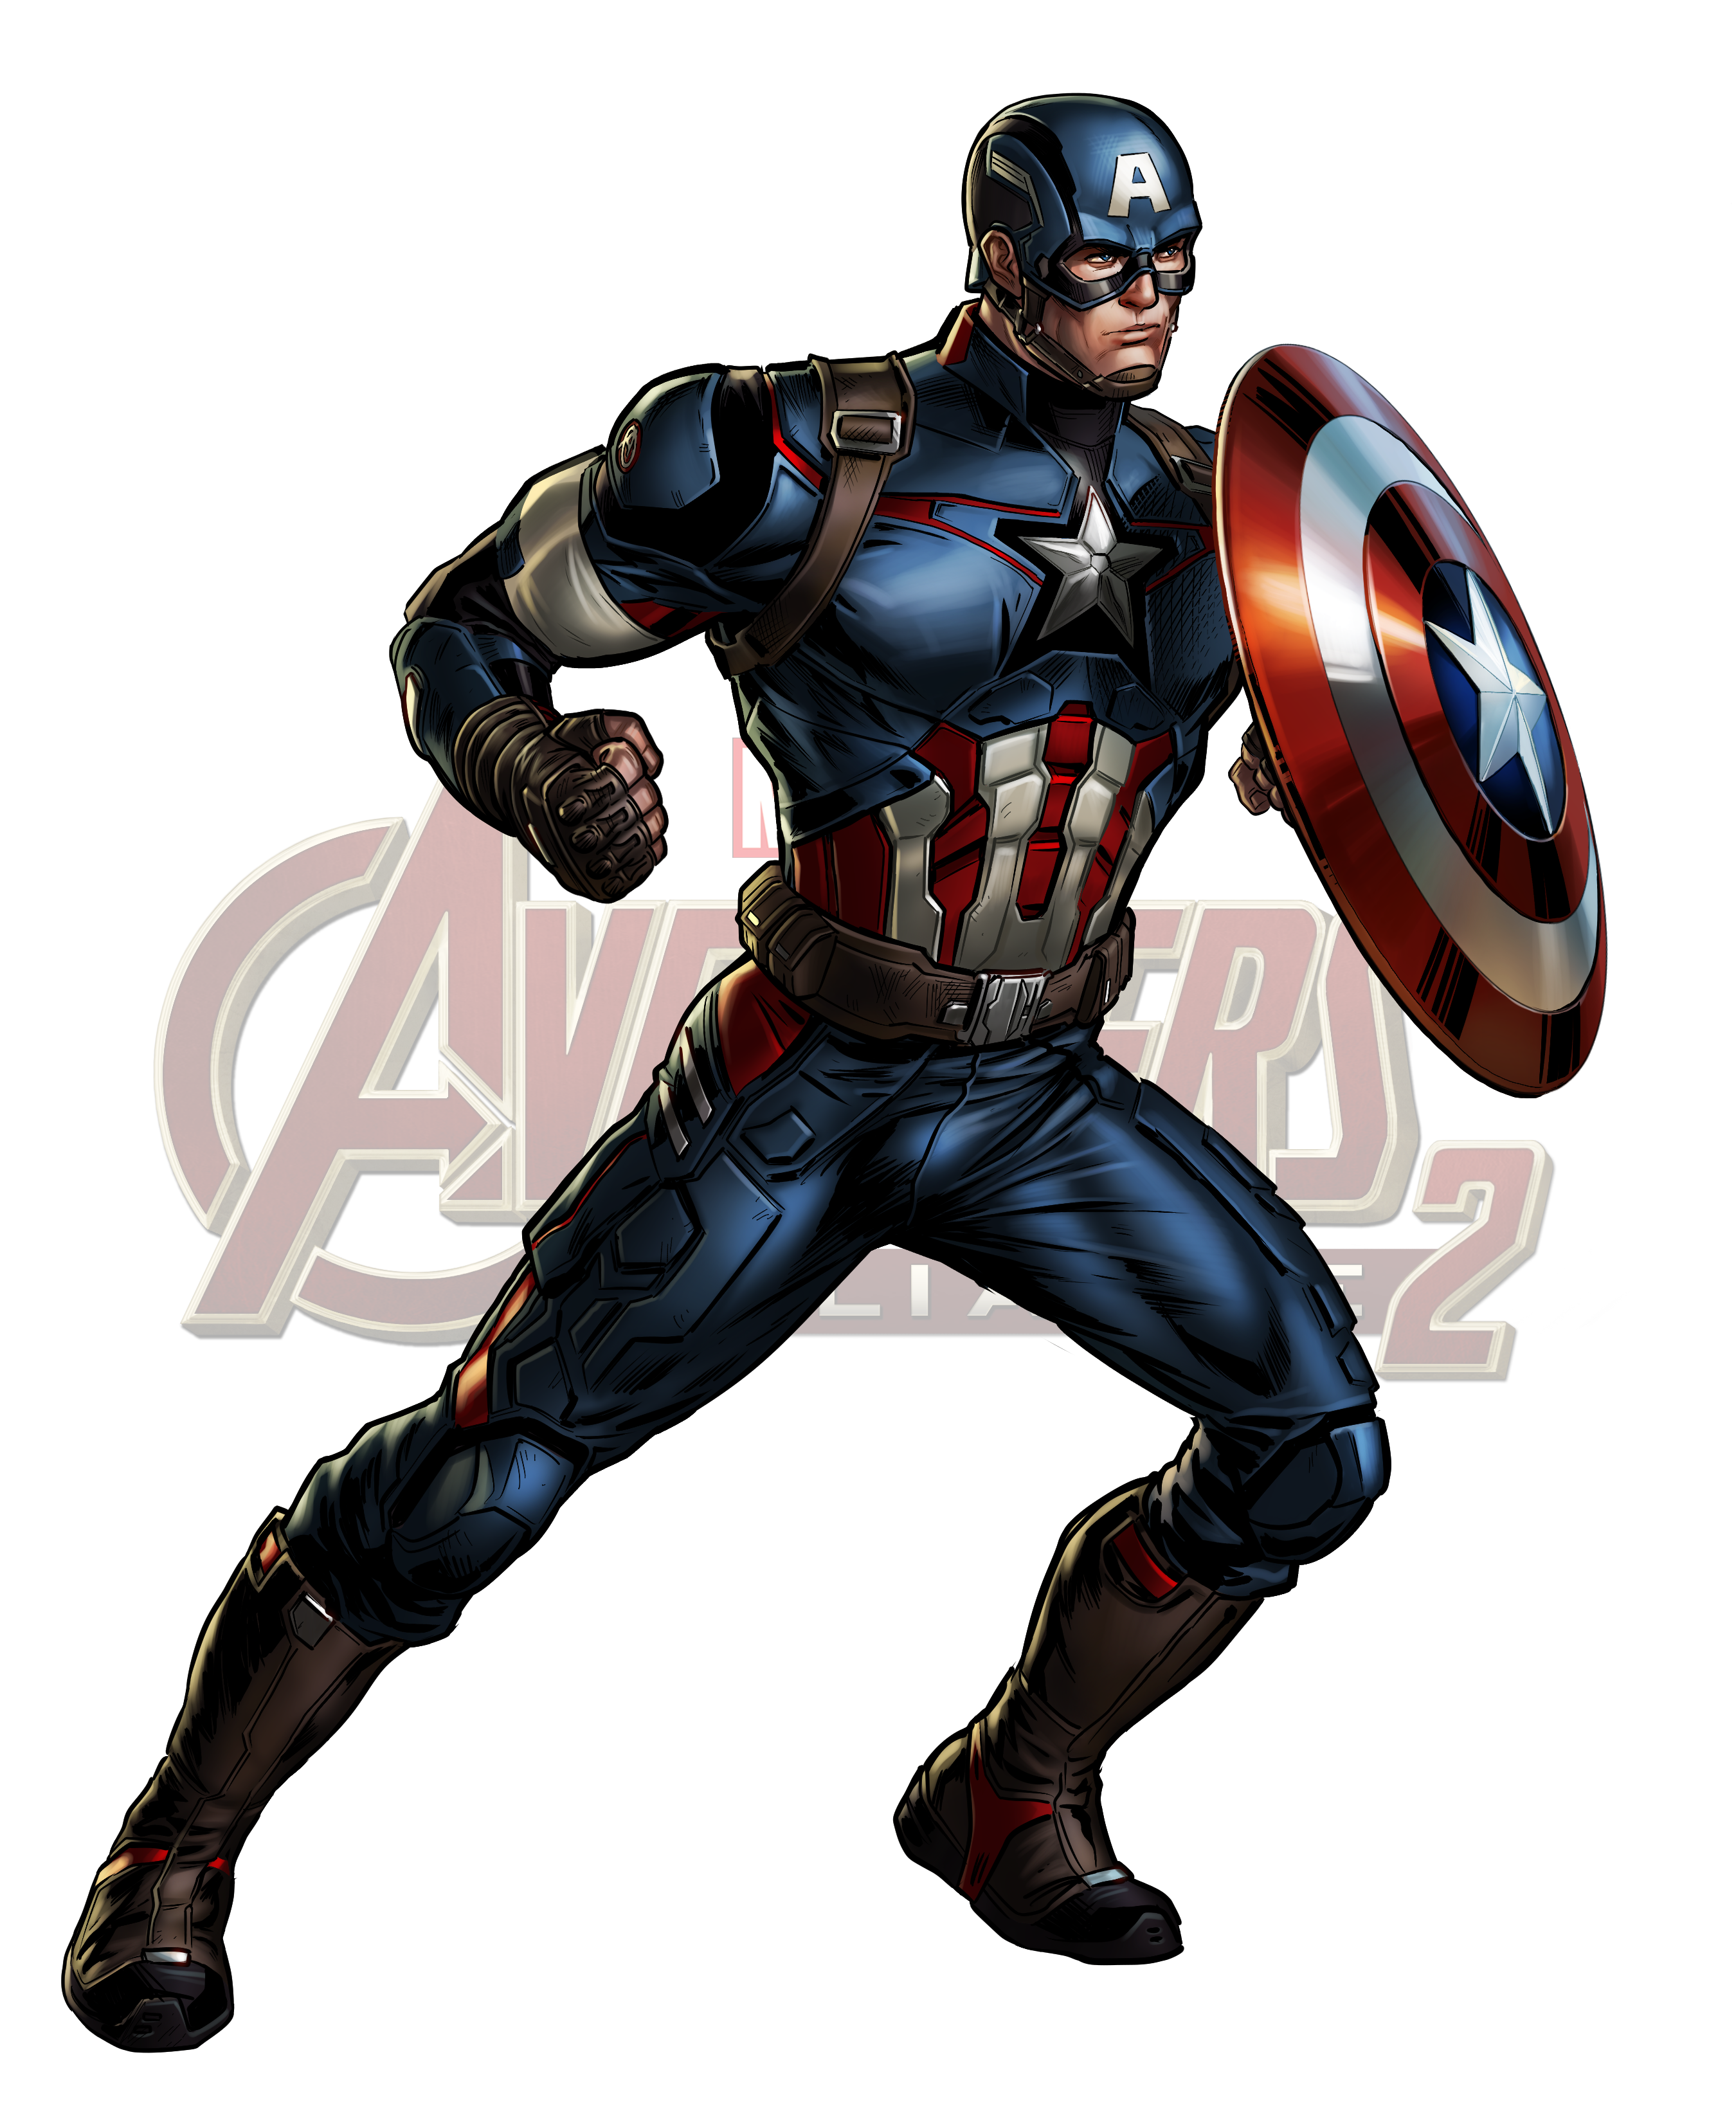 Marvel: Avengers Alliance #17